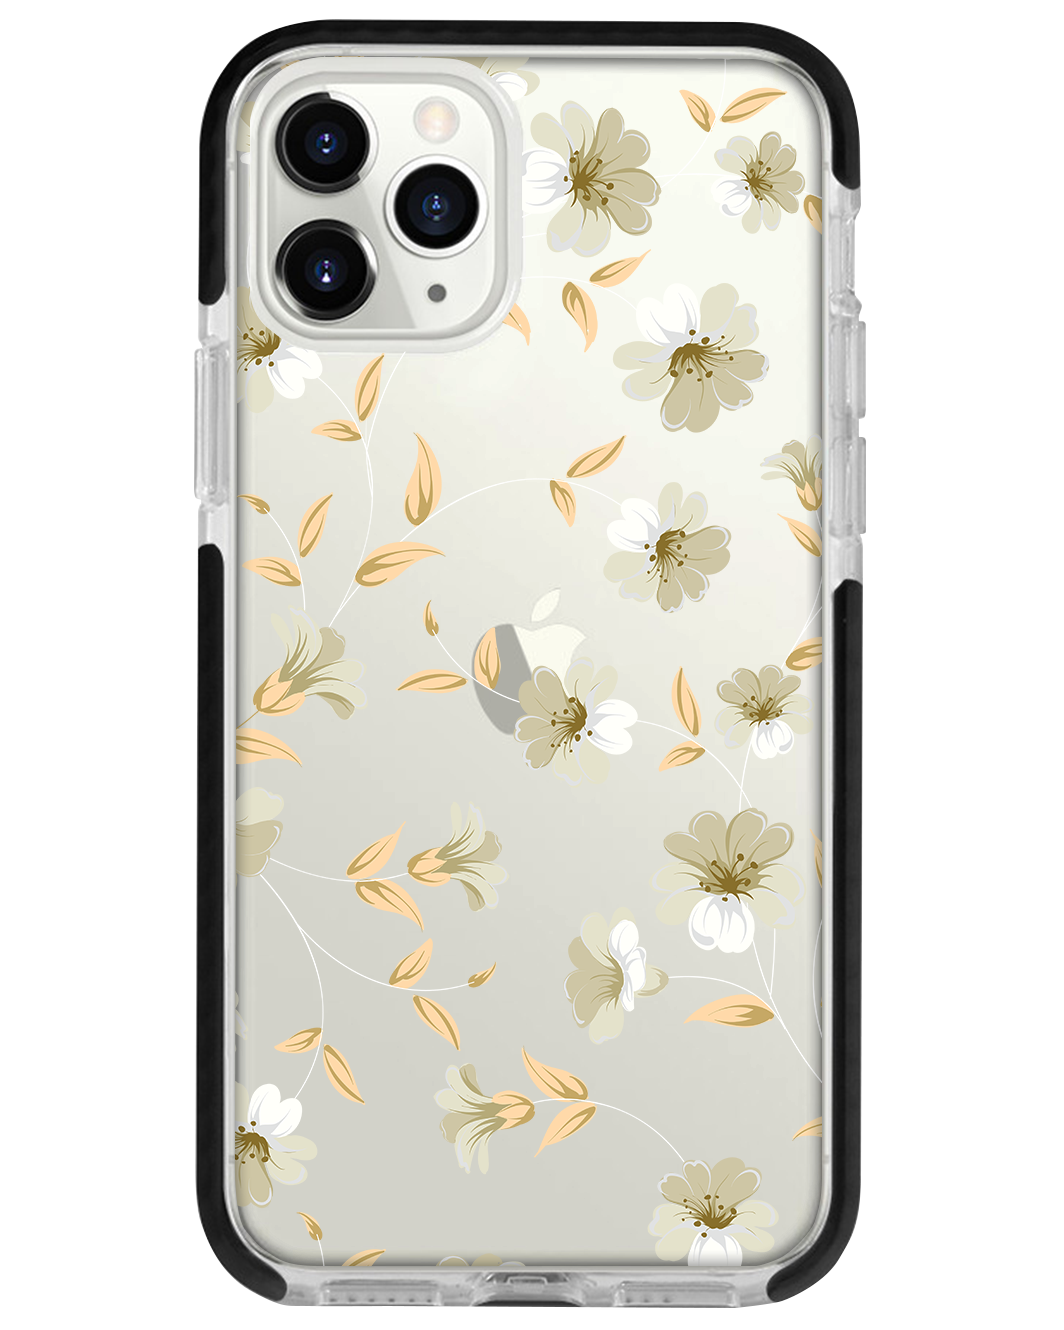 iPhone - White Magnolia